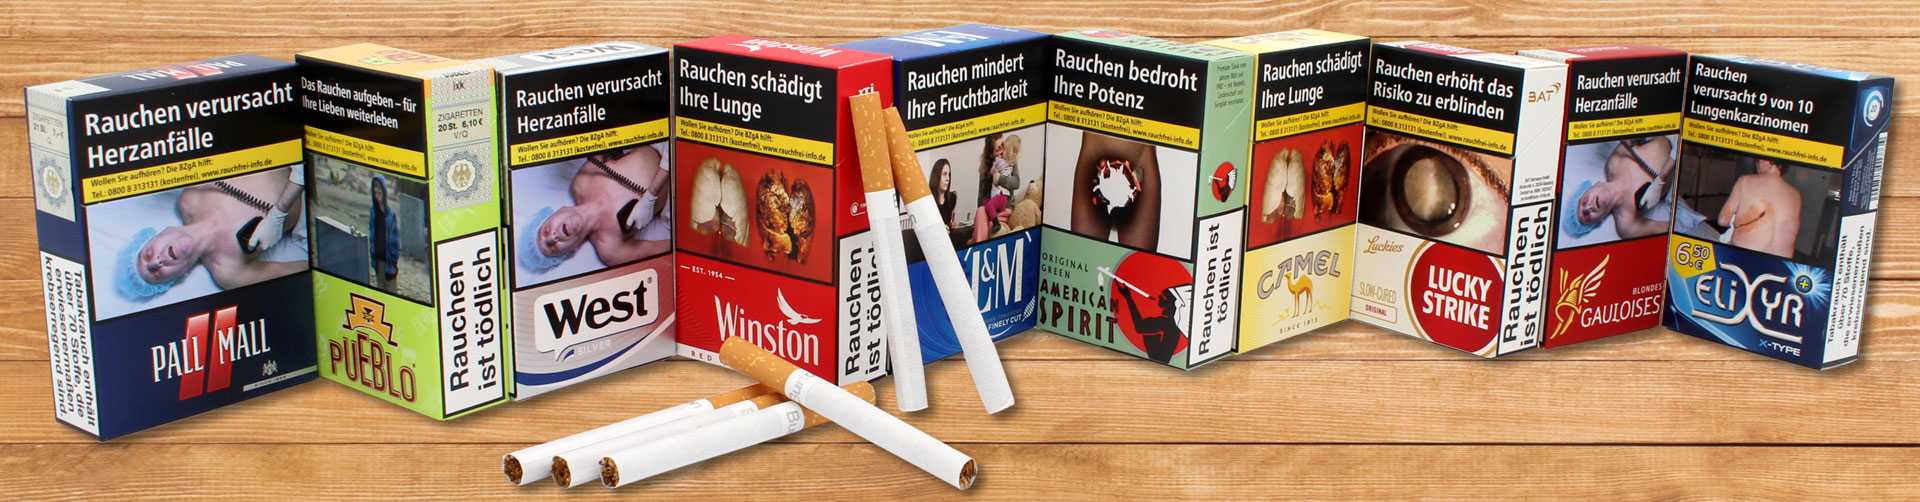 Che Cigarettes Filter  Zigaretten ohne Zusätze kaufen